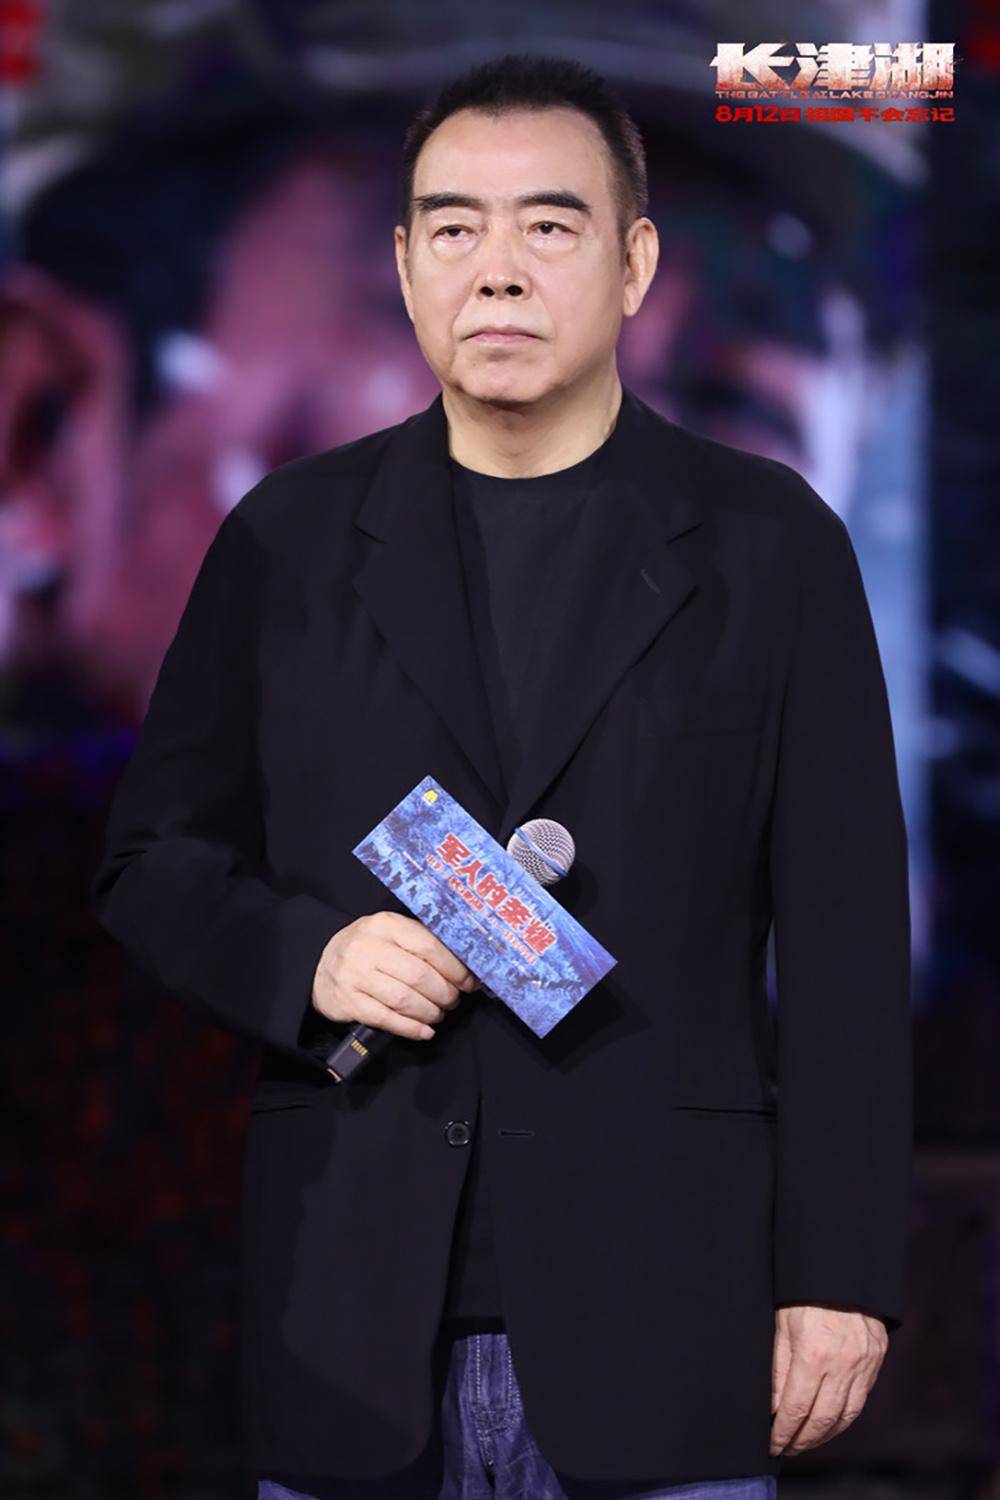 陈凯歌徐克林超贤为《长津湖》站台:我们知道在拍一部好电影